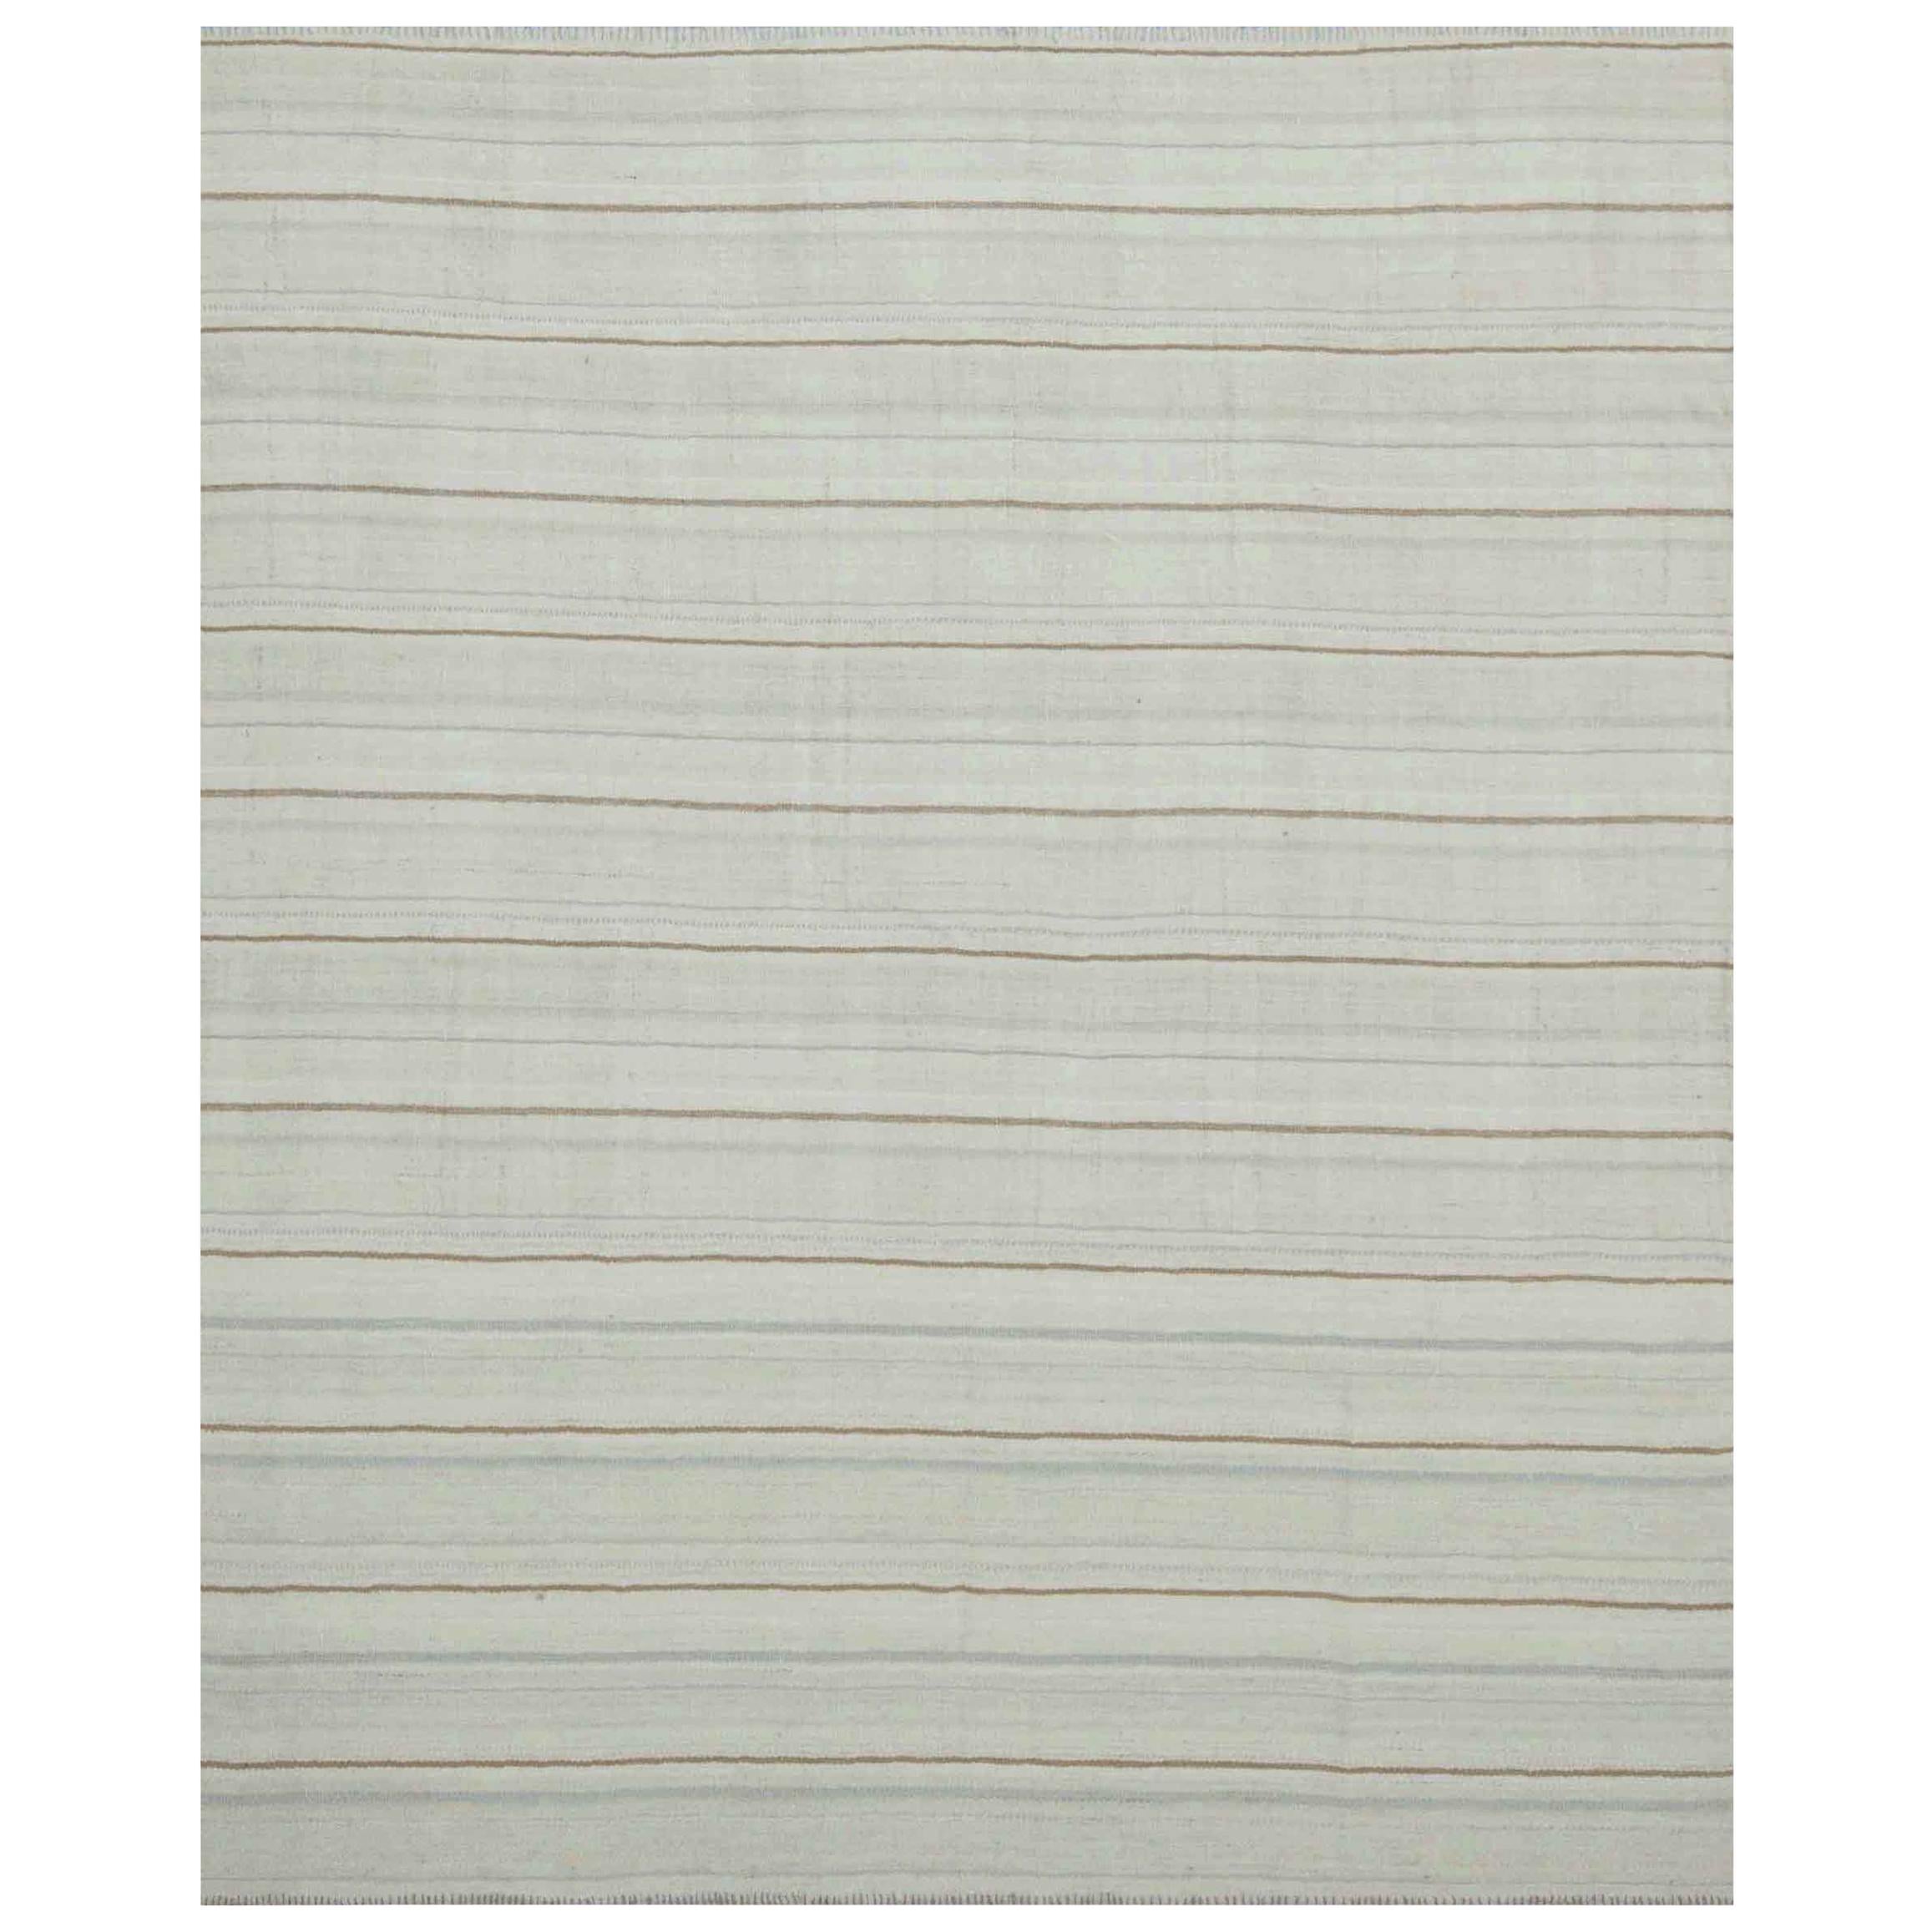 Moderner Flachgewebter Kelim-Teppich in Elfenbein mit braunen, weißen und grauen Streifen